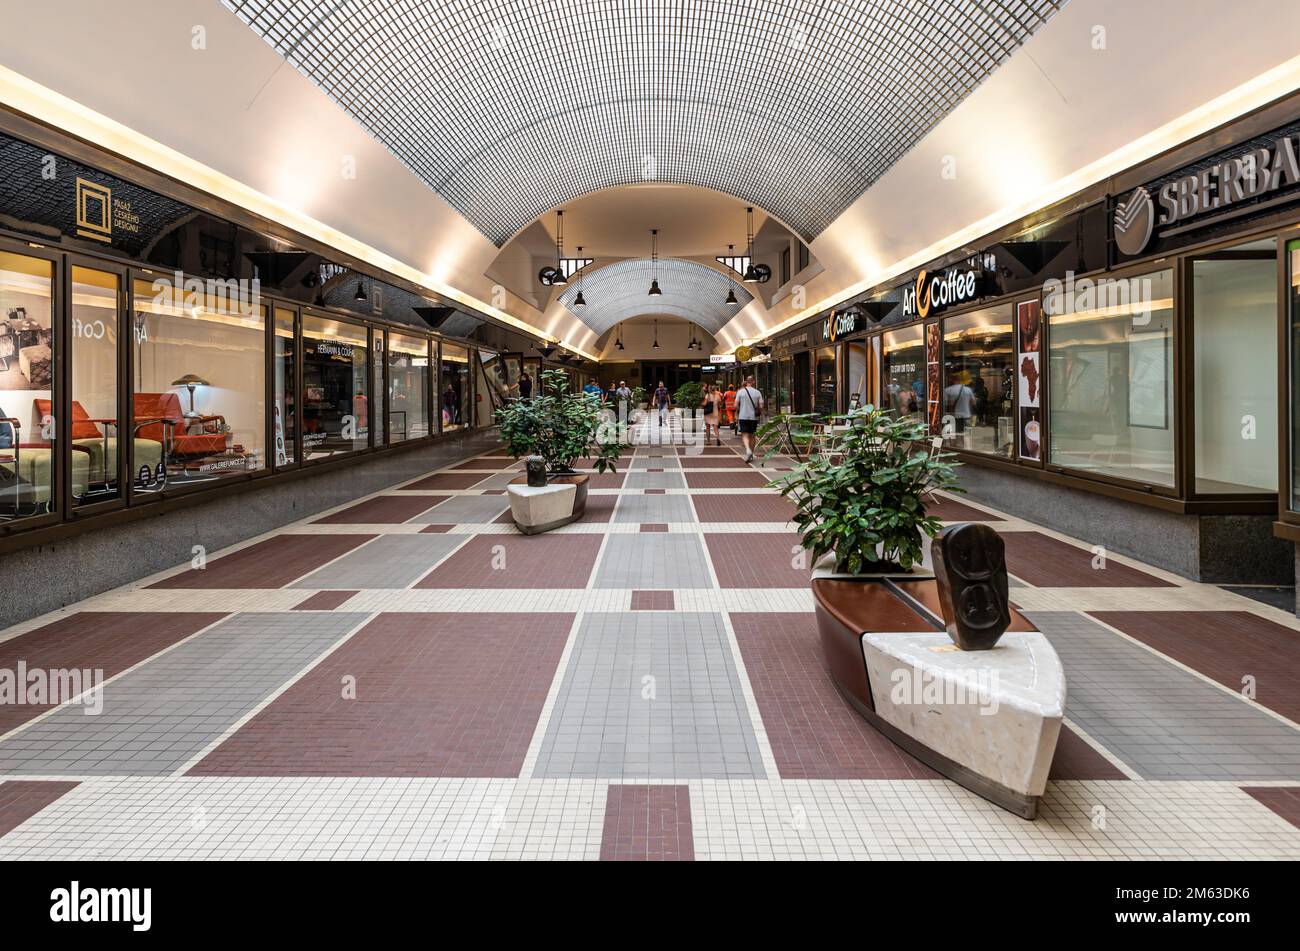 Prague - Czech Republic Luxurious Art Nouveau design of a shopping gallery. Stock Photo